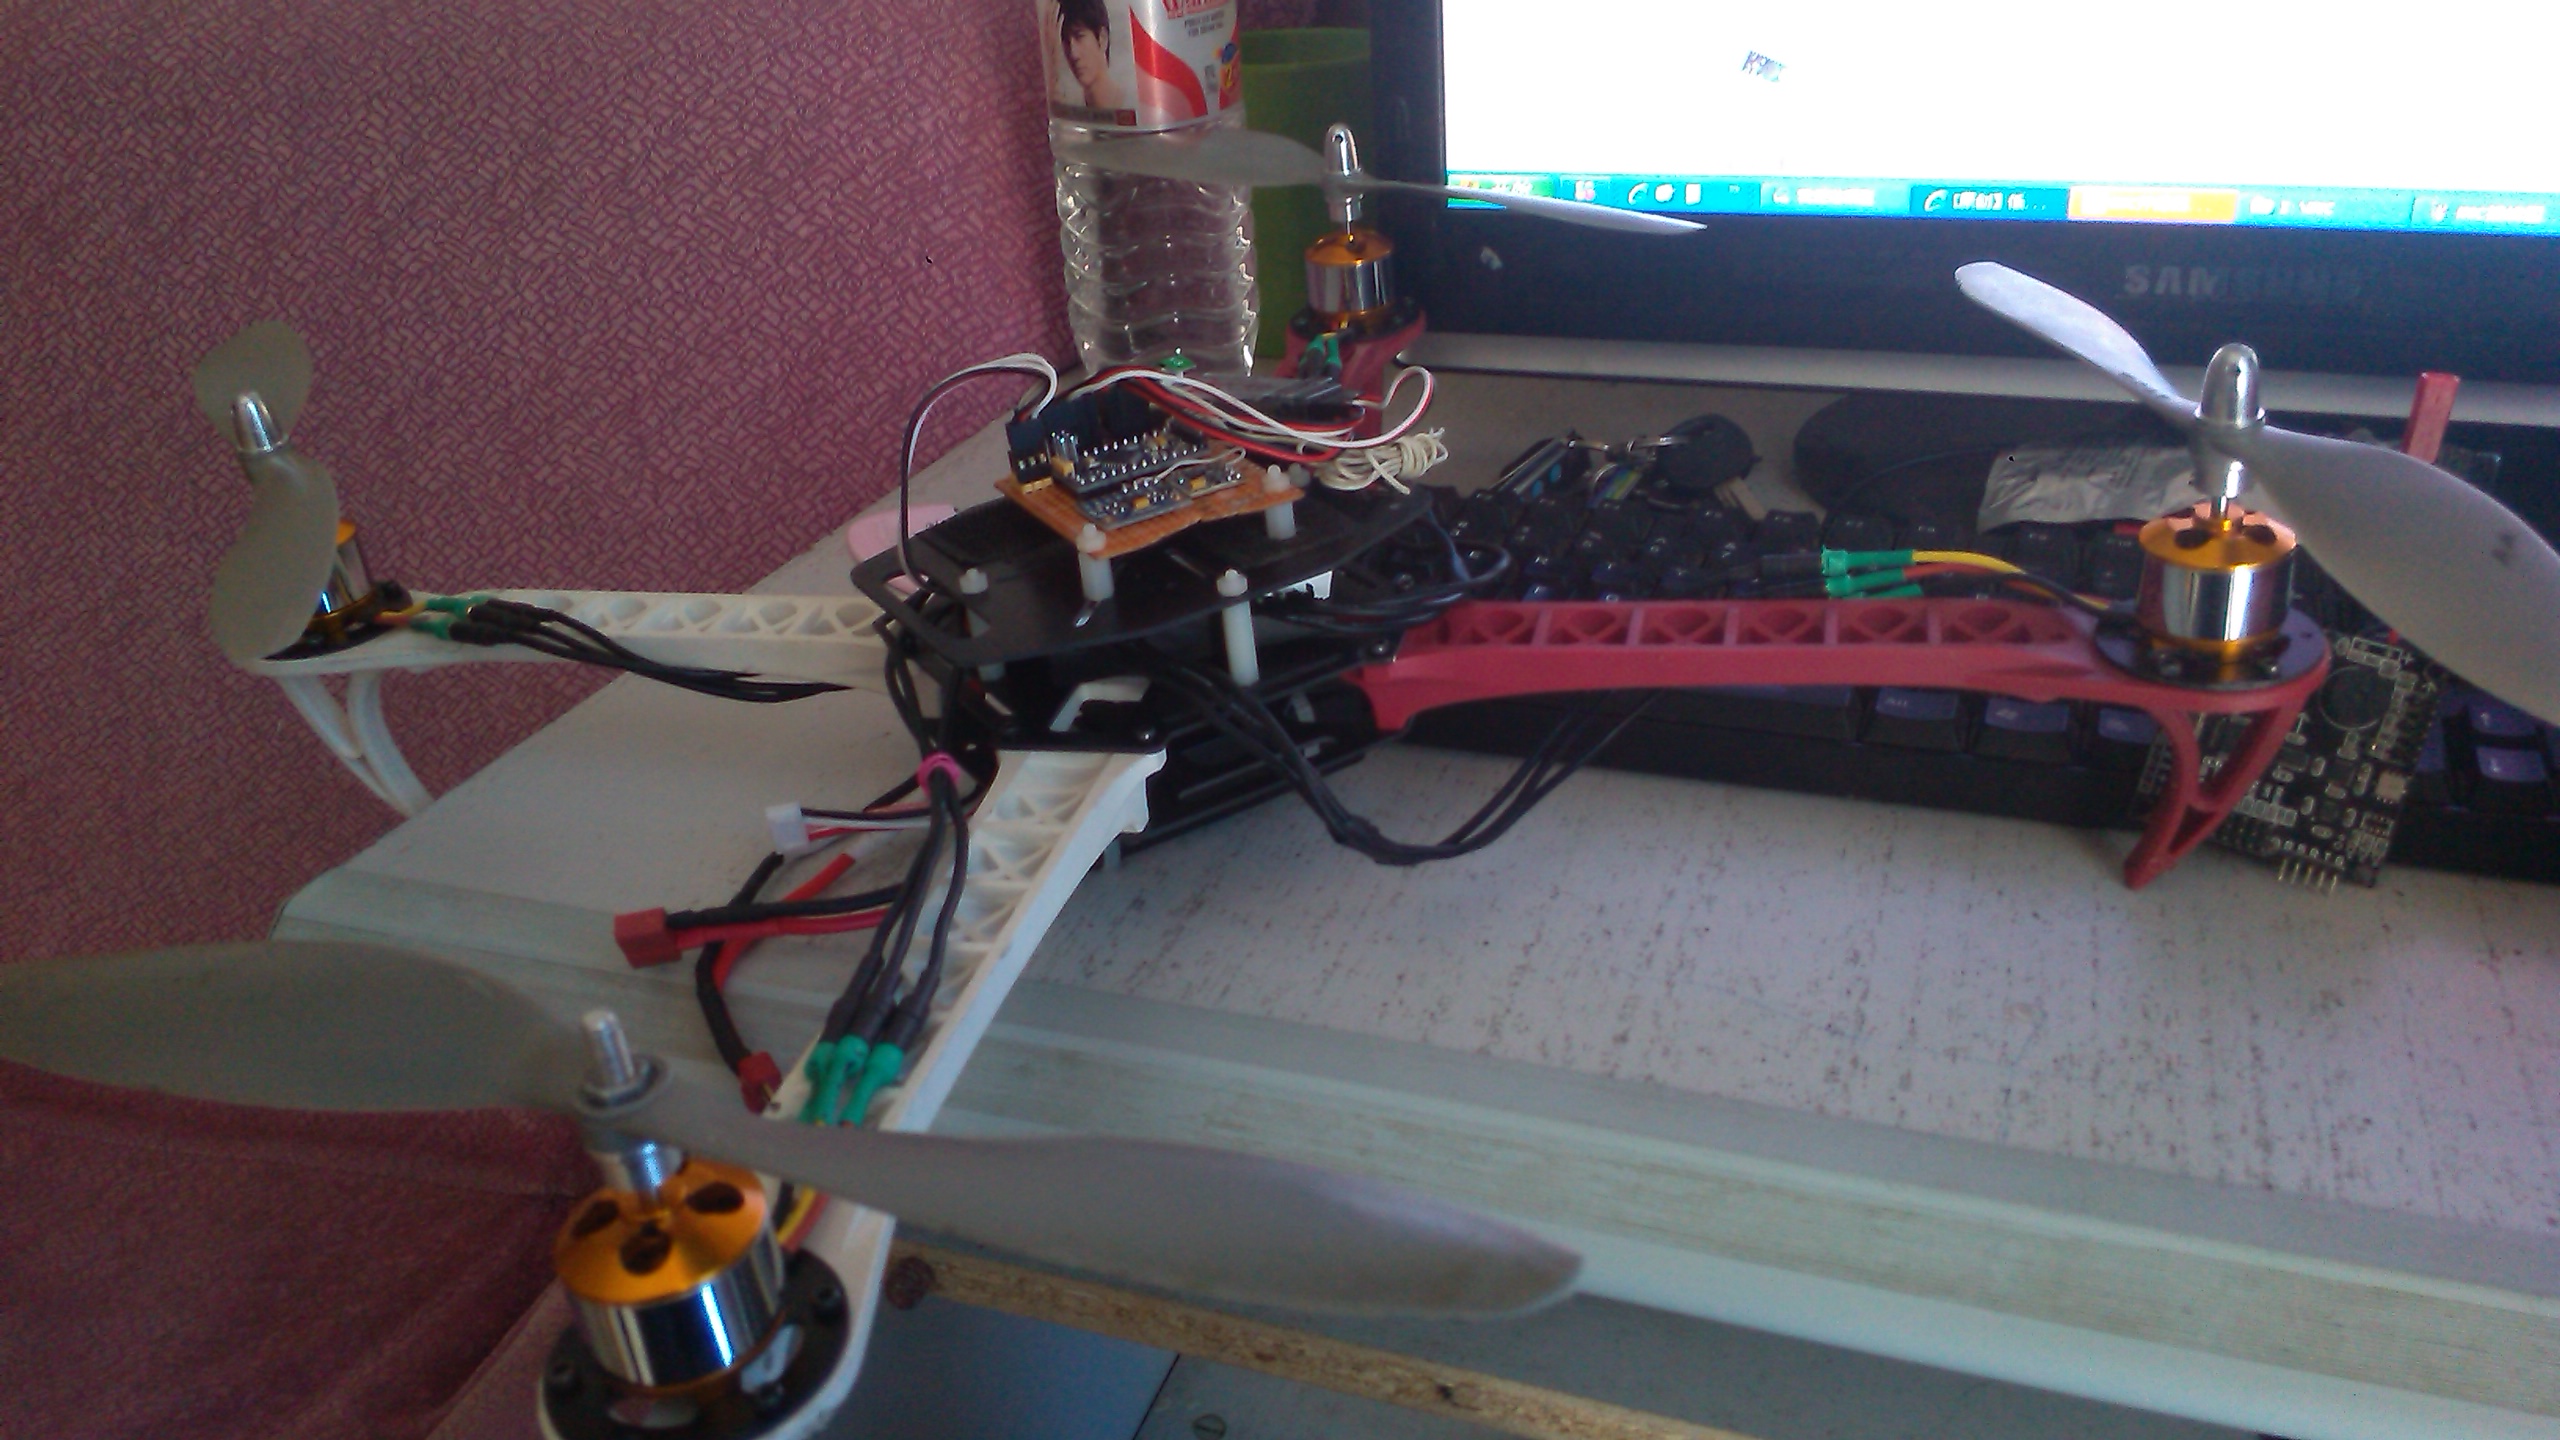 [原创】低成本自己做飞控，用arduino pro mini +GY-86模块 飞控,四轴,伤不起,好几百,逛论坛 作者:121341443 2669 